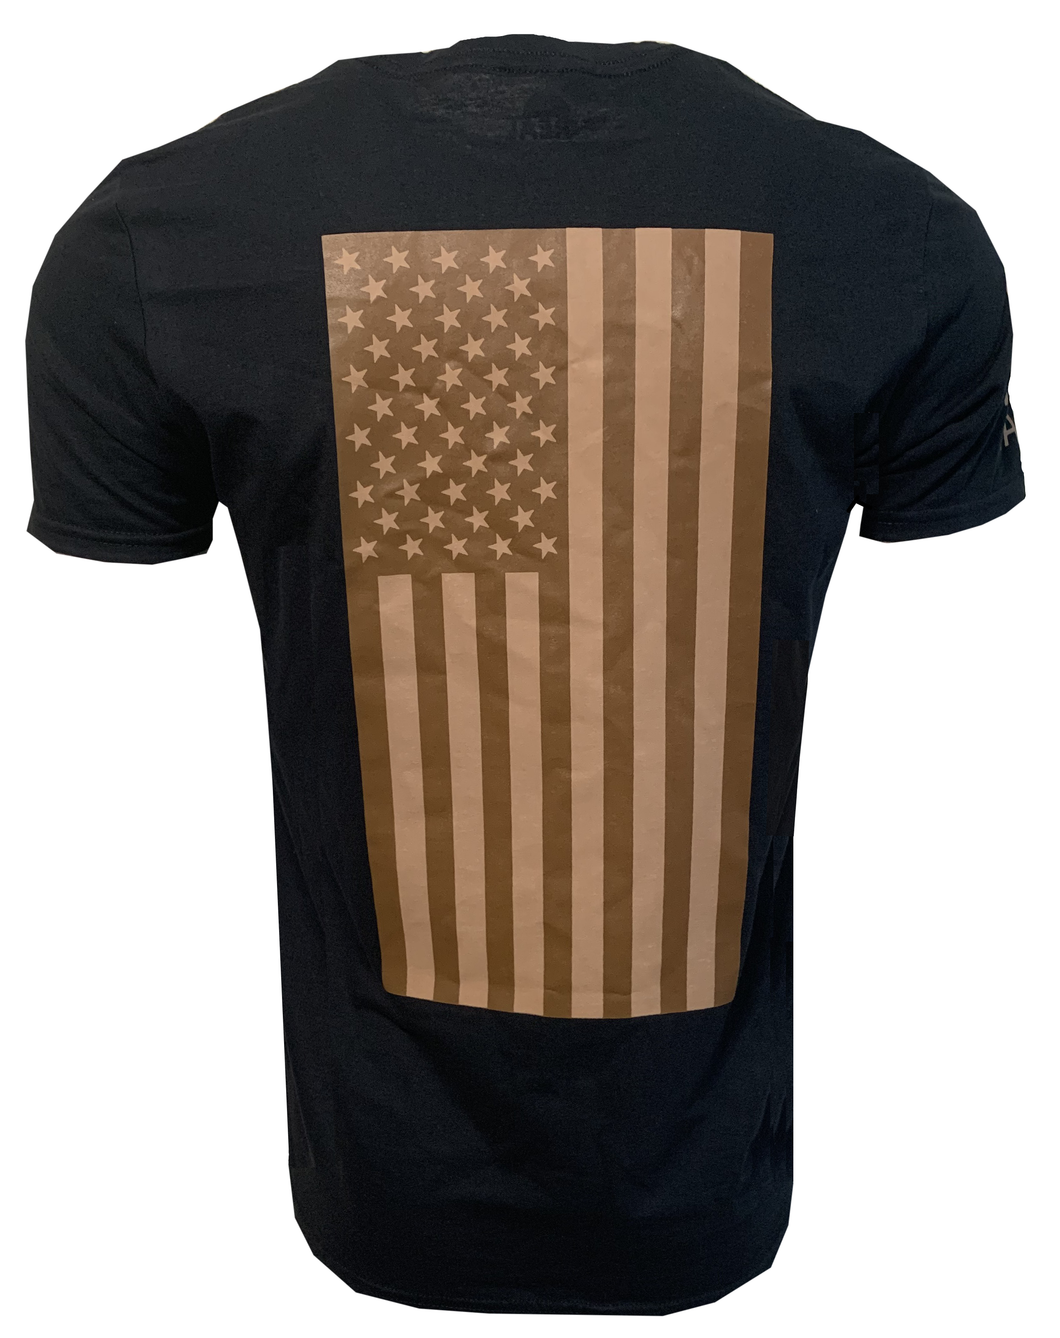 American Flag - Adult Short Sleeve T - Desert Tan on Black